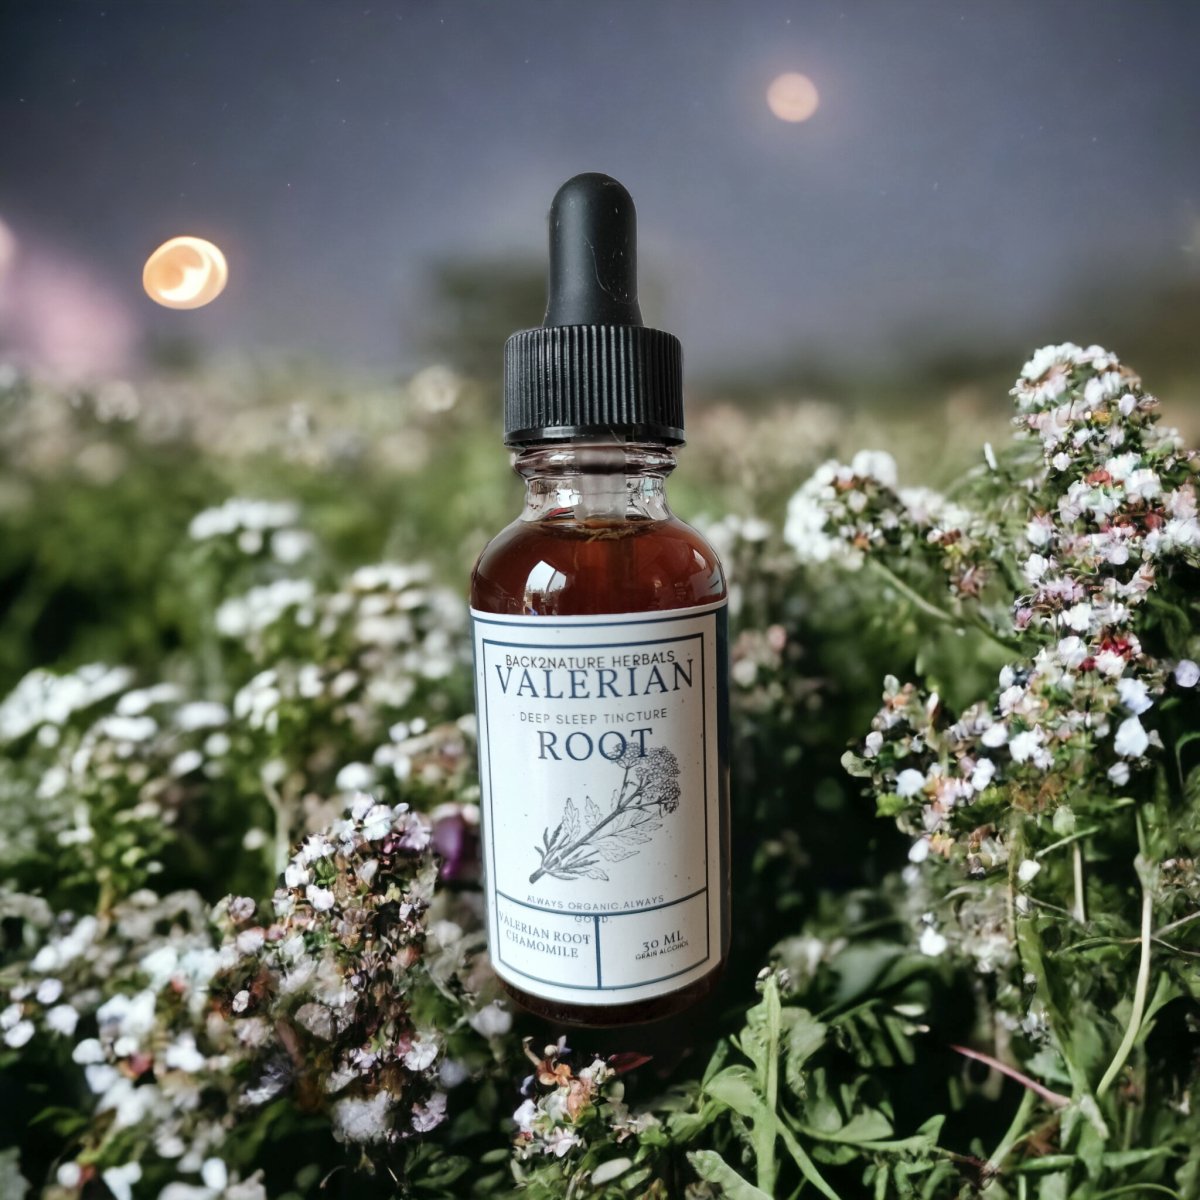 Organic Valerian Root Sleep Tincture - Back 2 Nature Herbals